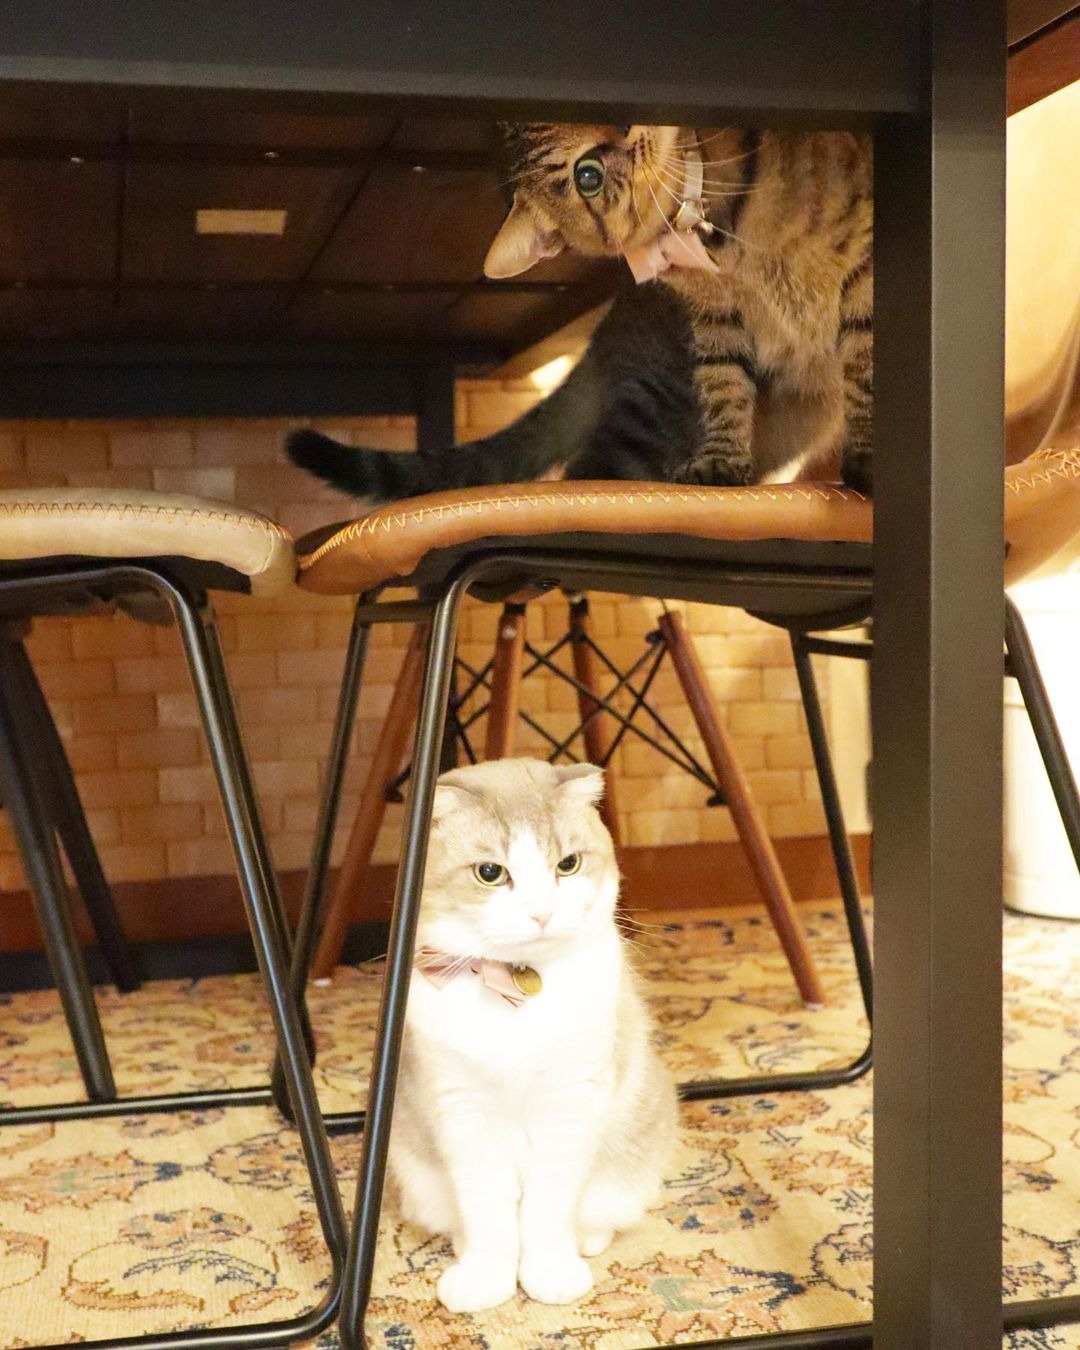 掃除機は苦手だにゃ…。テーブルの下から様子を伺っている猫ちゃんがかわいい♪